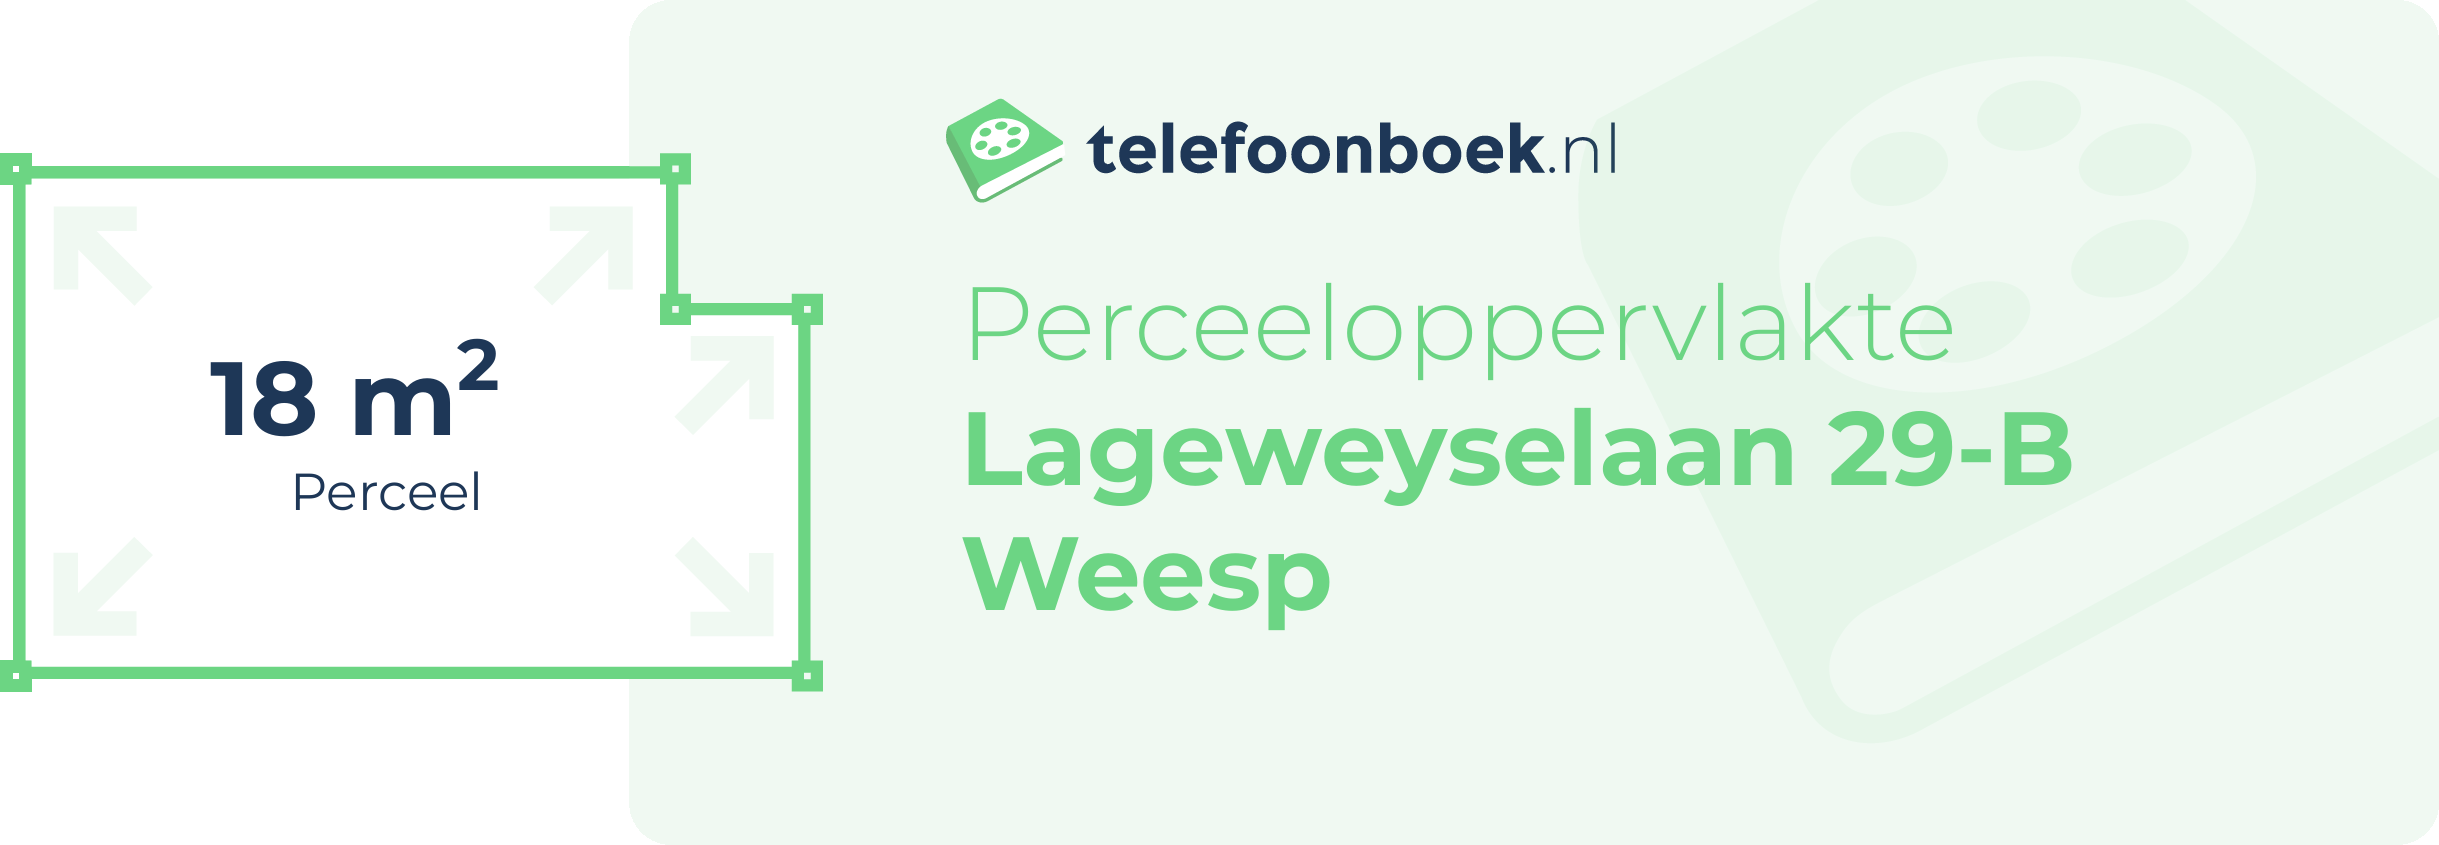 Perceeloppervlakte Lageweyselaan 29-B Weesp